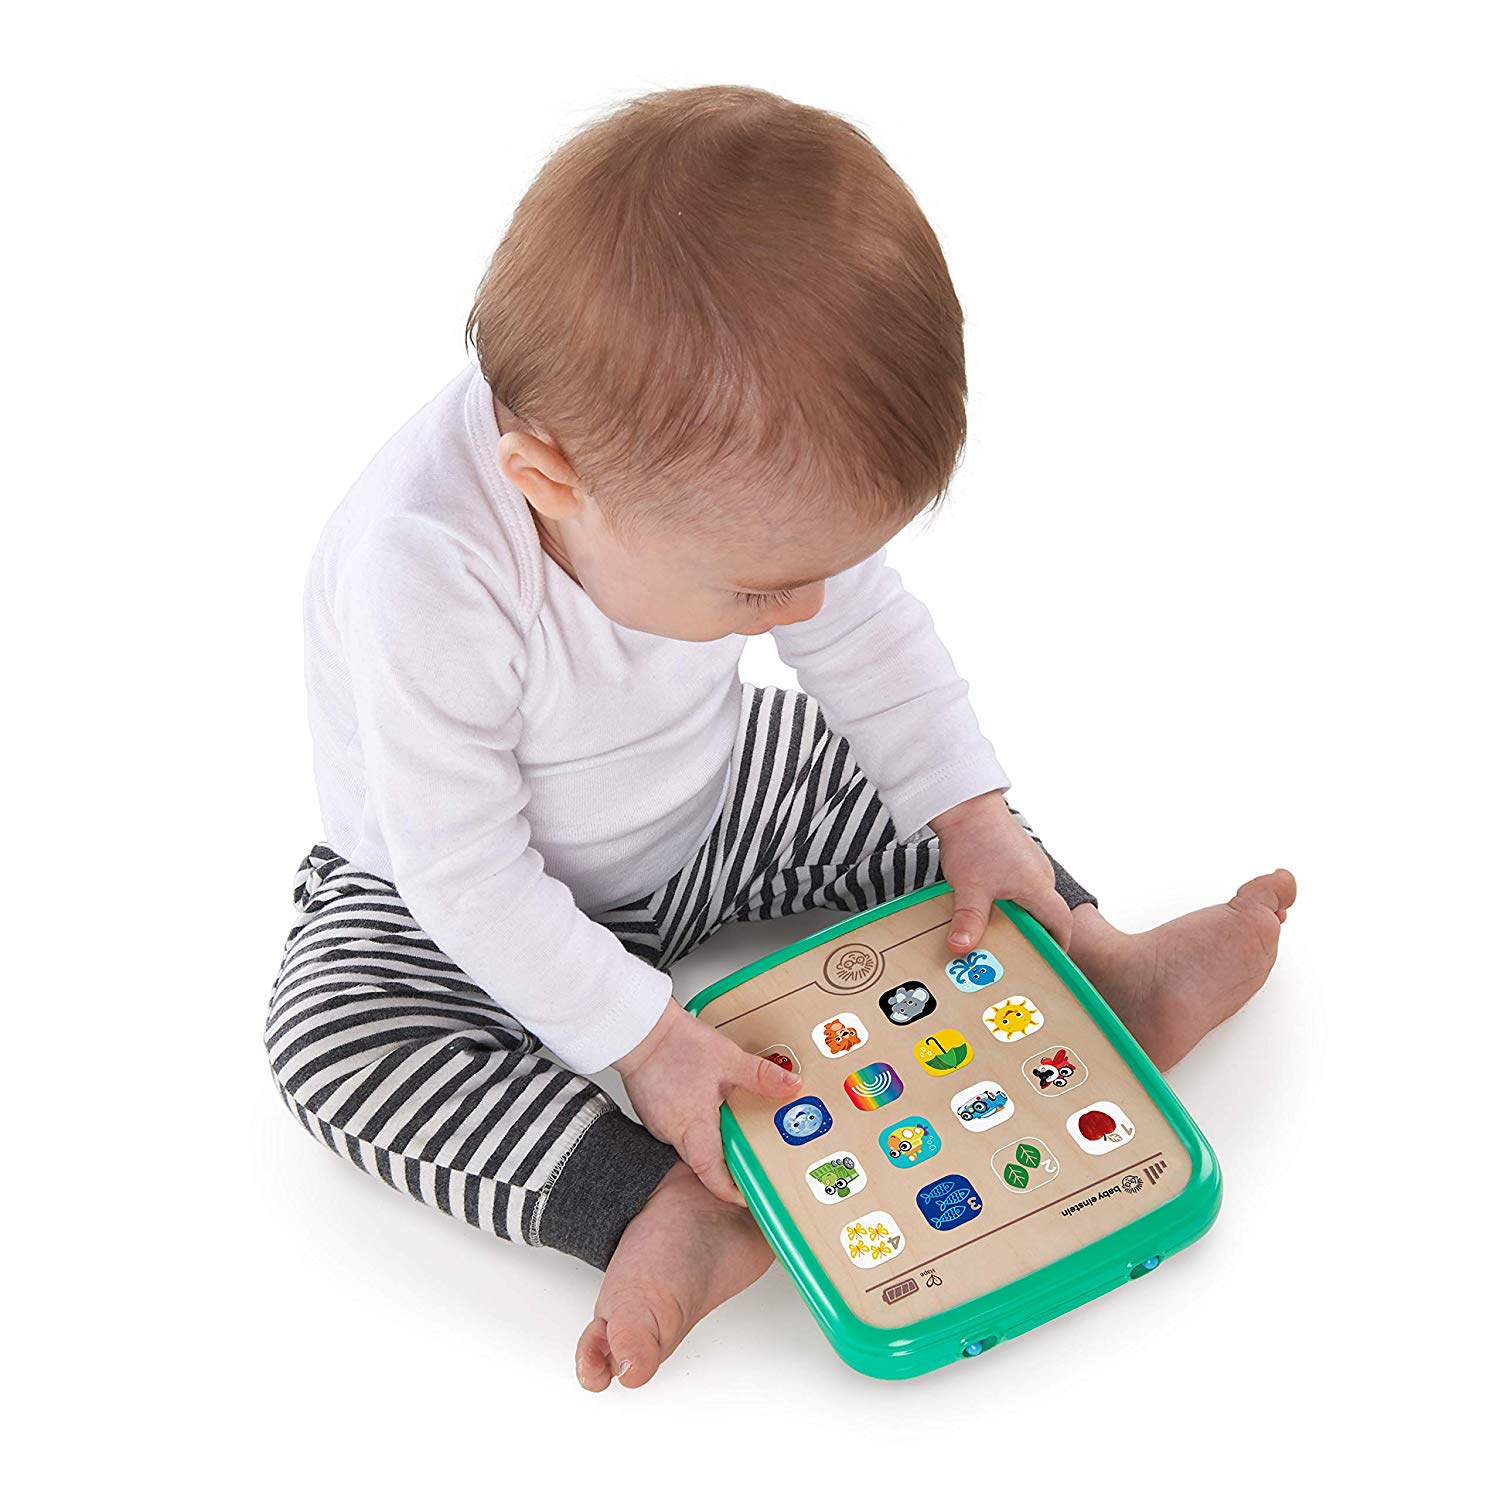 Jouets pour bébés Tablette pour bébé Jouets d'apprentissage Jouet